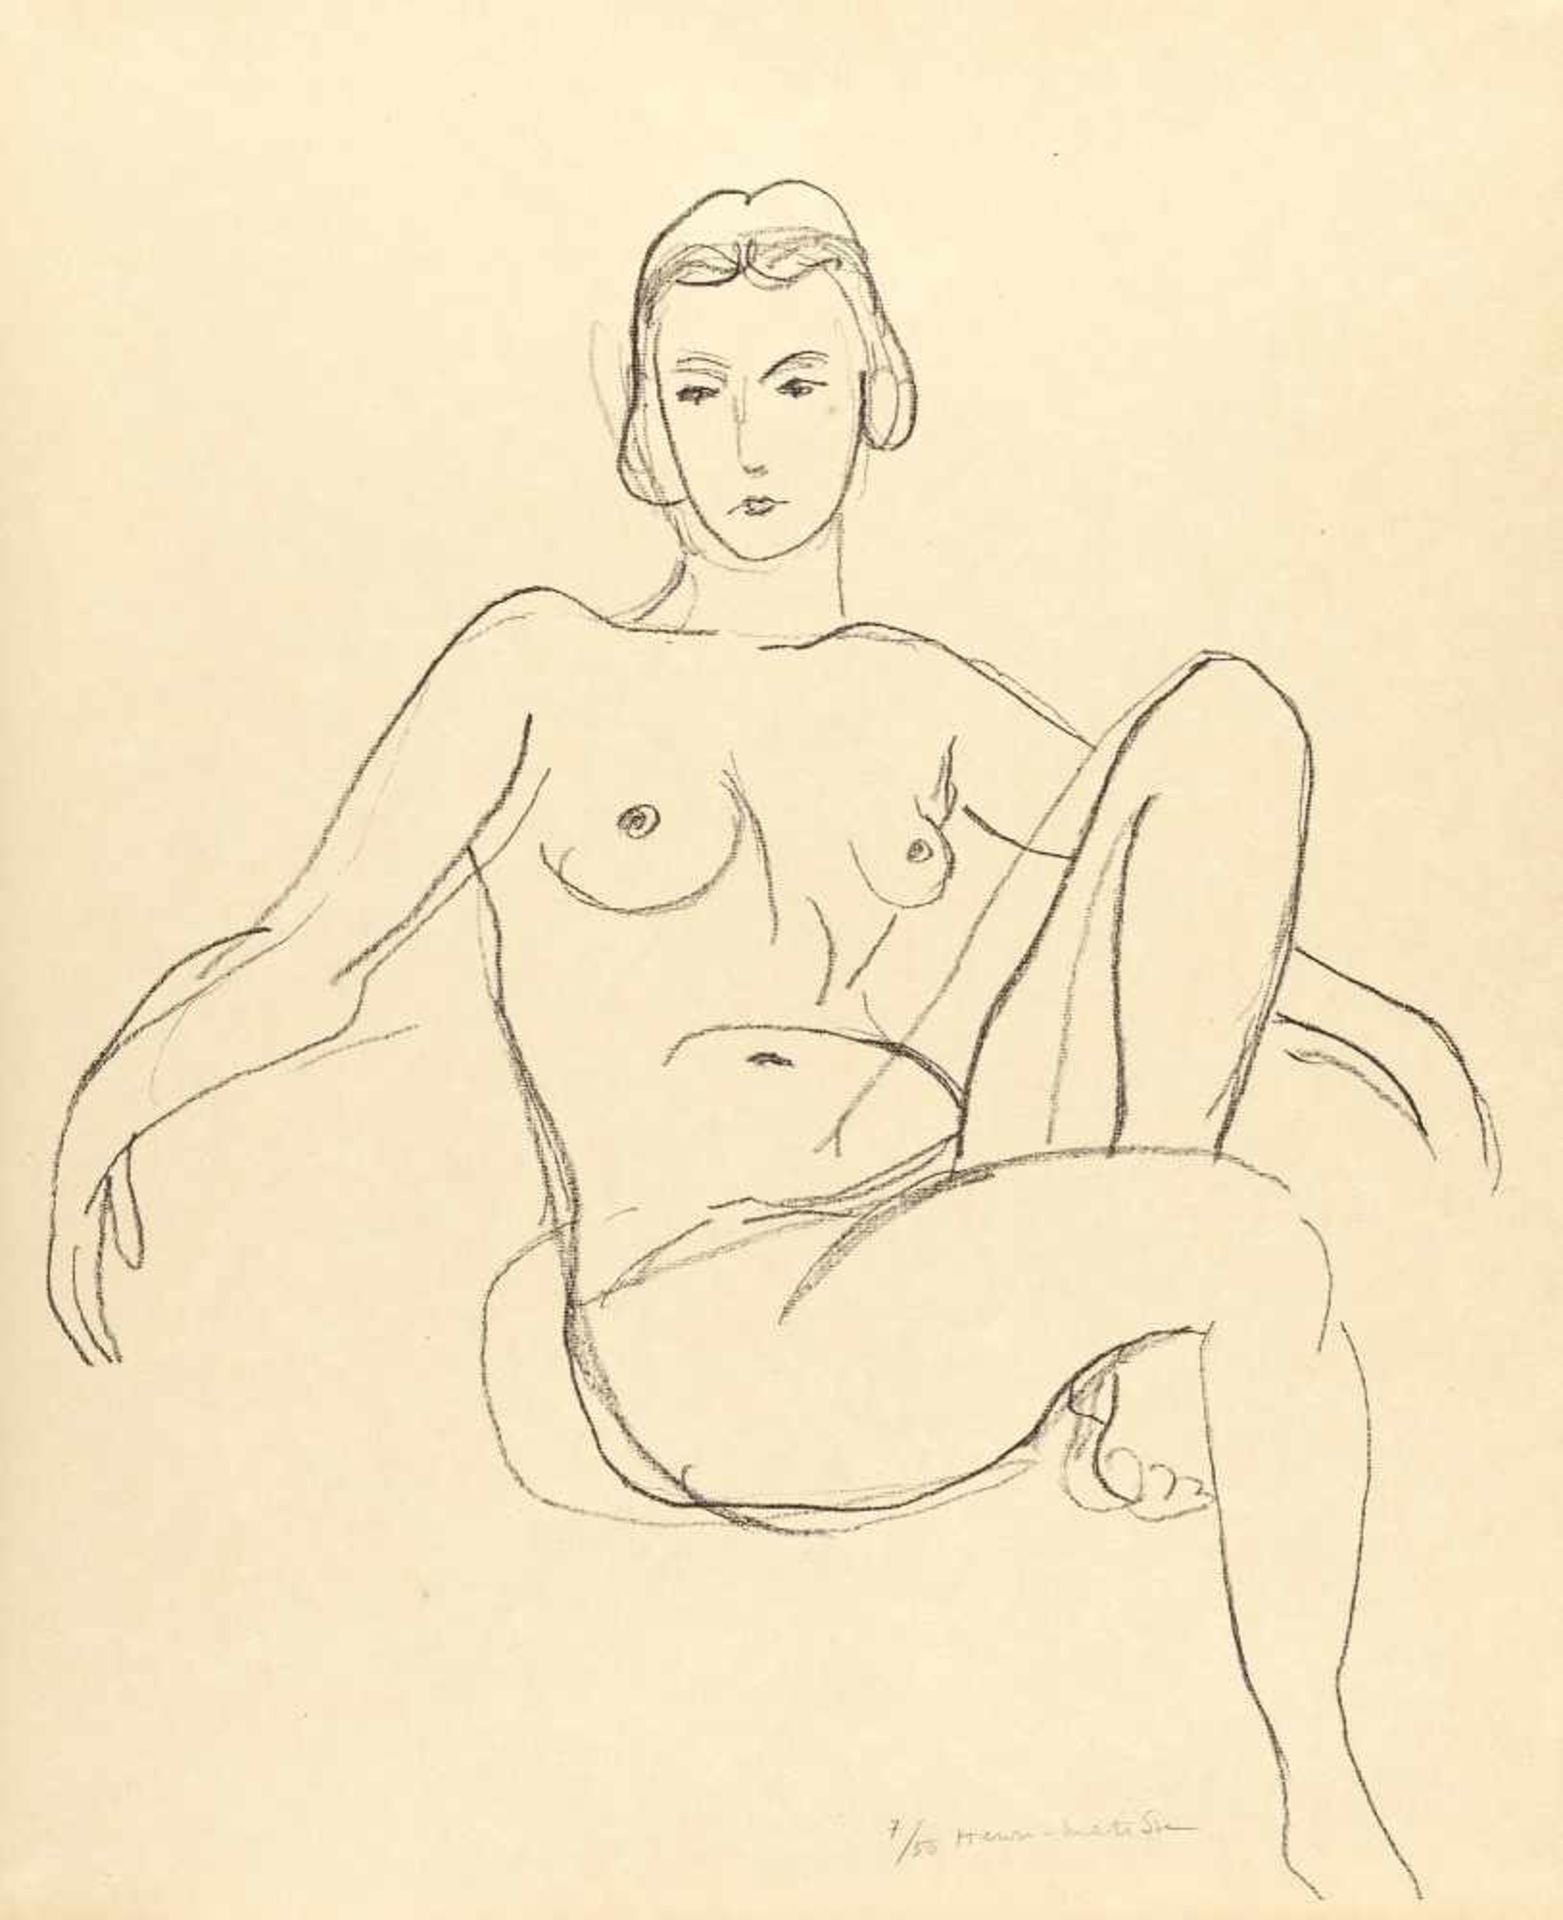 Henri Matisse Nu assis les bras étendus Lithographie auf festem Simili-Japan. (1925). Ca. 49 x 42 cm